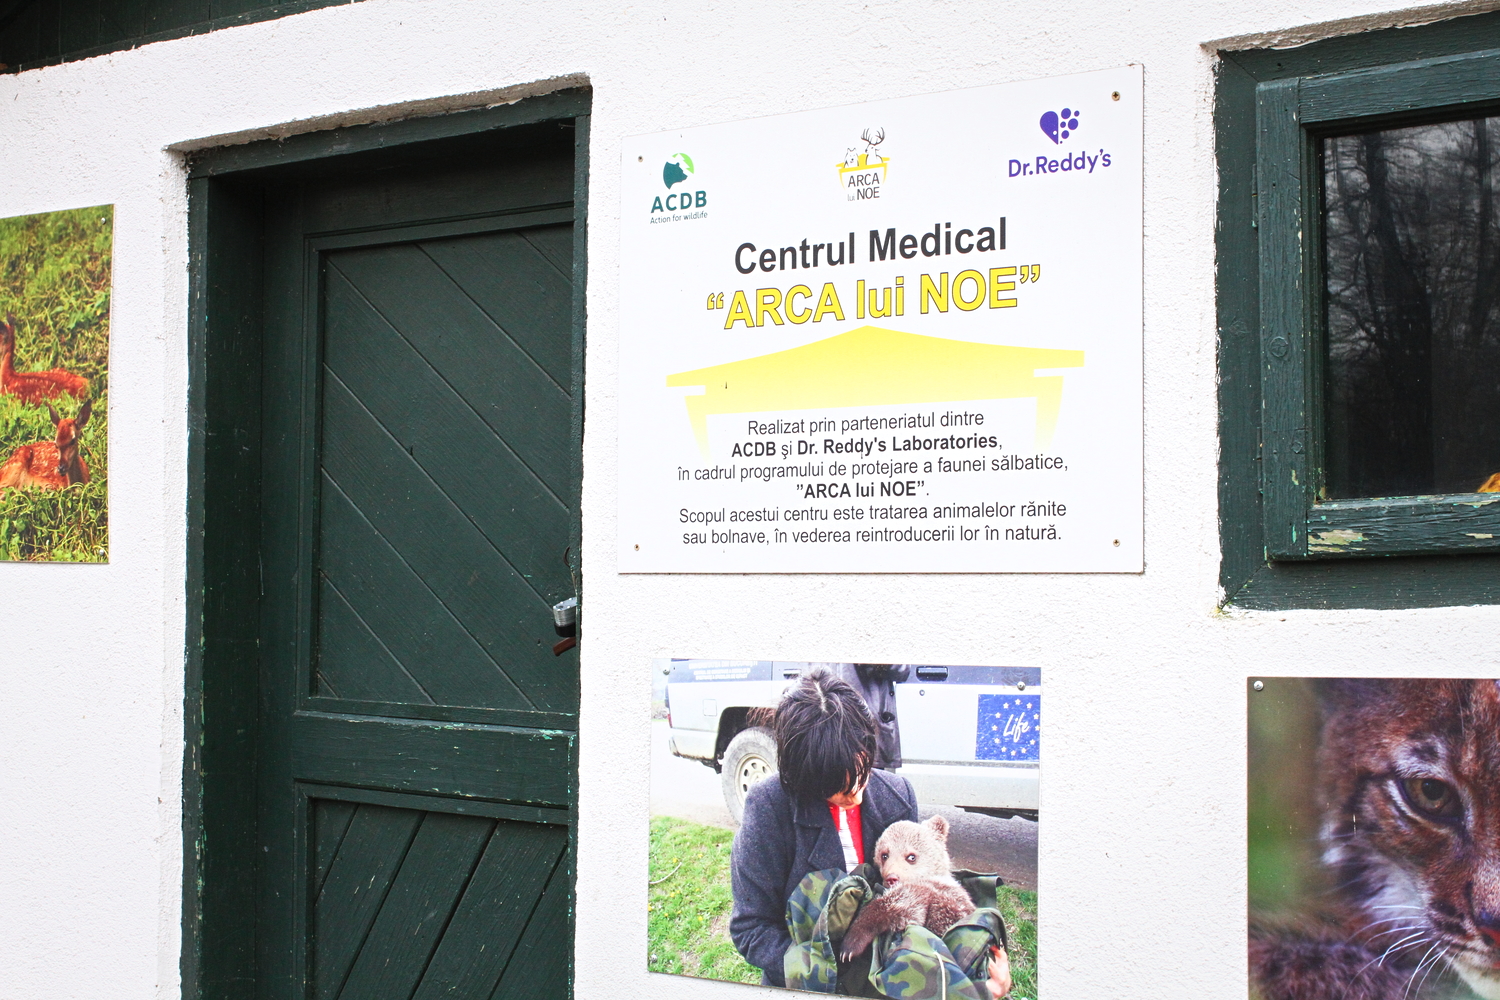 Affichage à l’entrée du petit bâtiment qui sert de bureau et de cabinet vétérinaire. © Globe Reporters